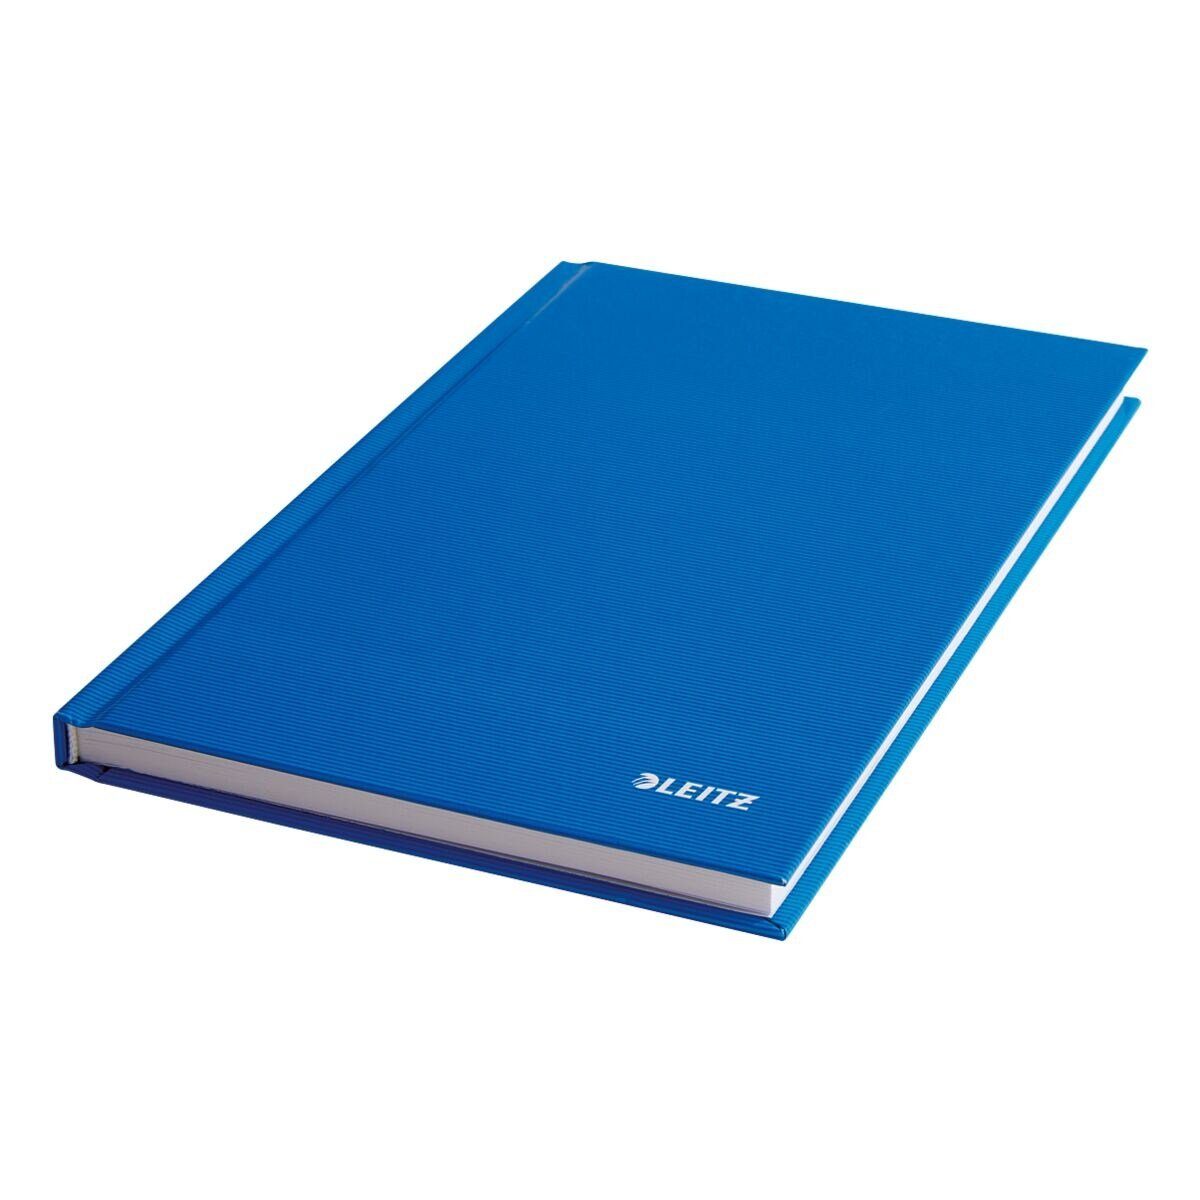 LEITZ Notizbuch Solid 4666, kariert, mit Introseiten, Hardcover hellblau